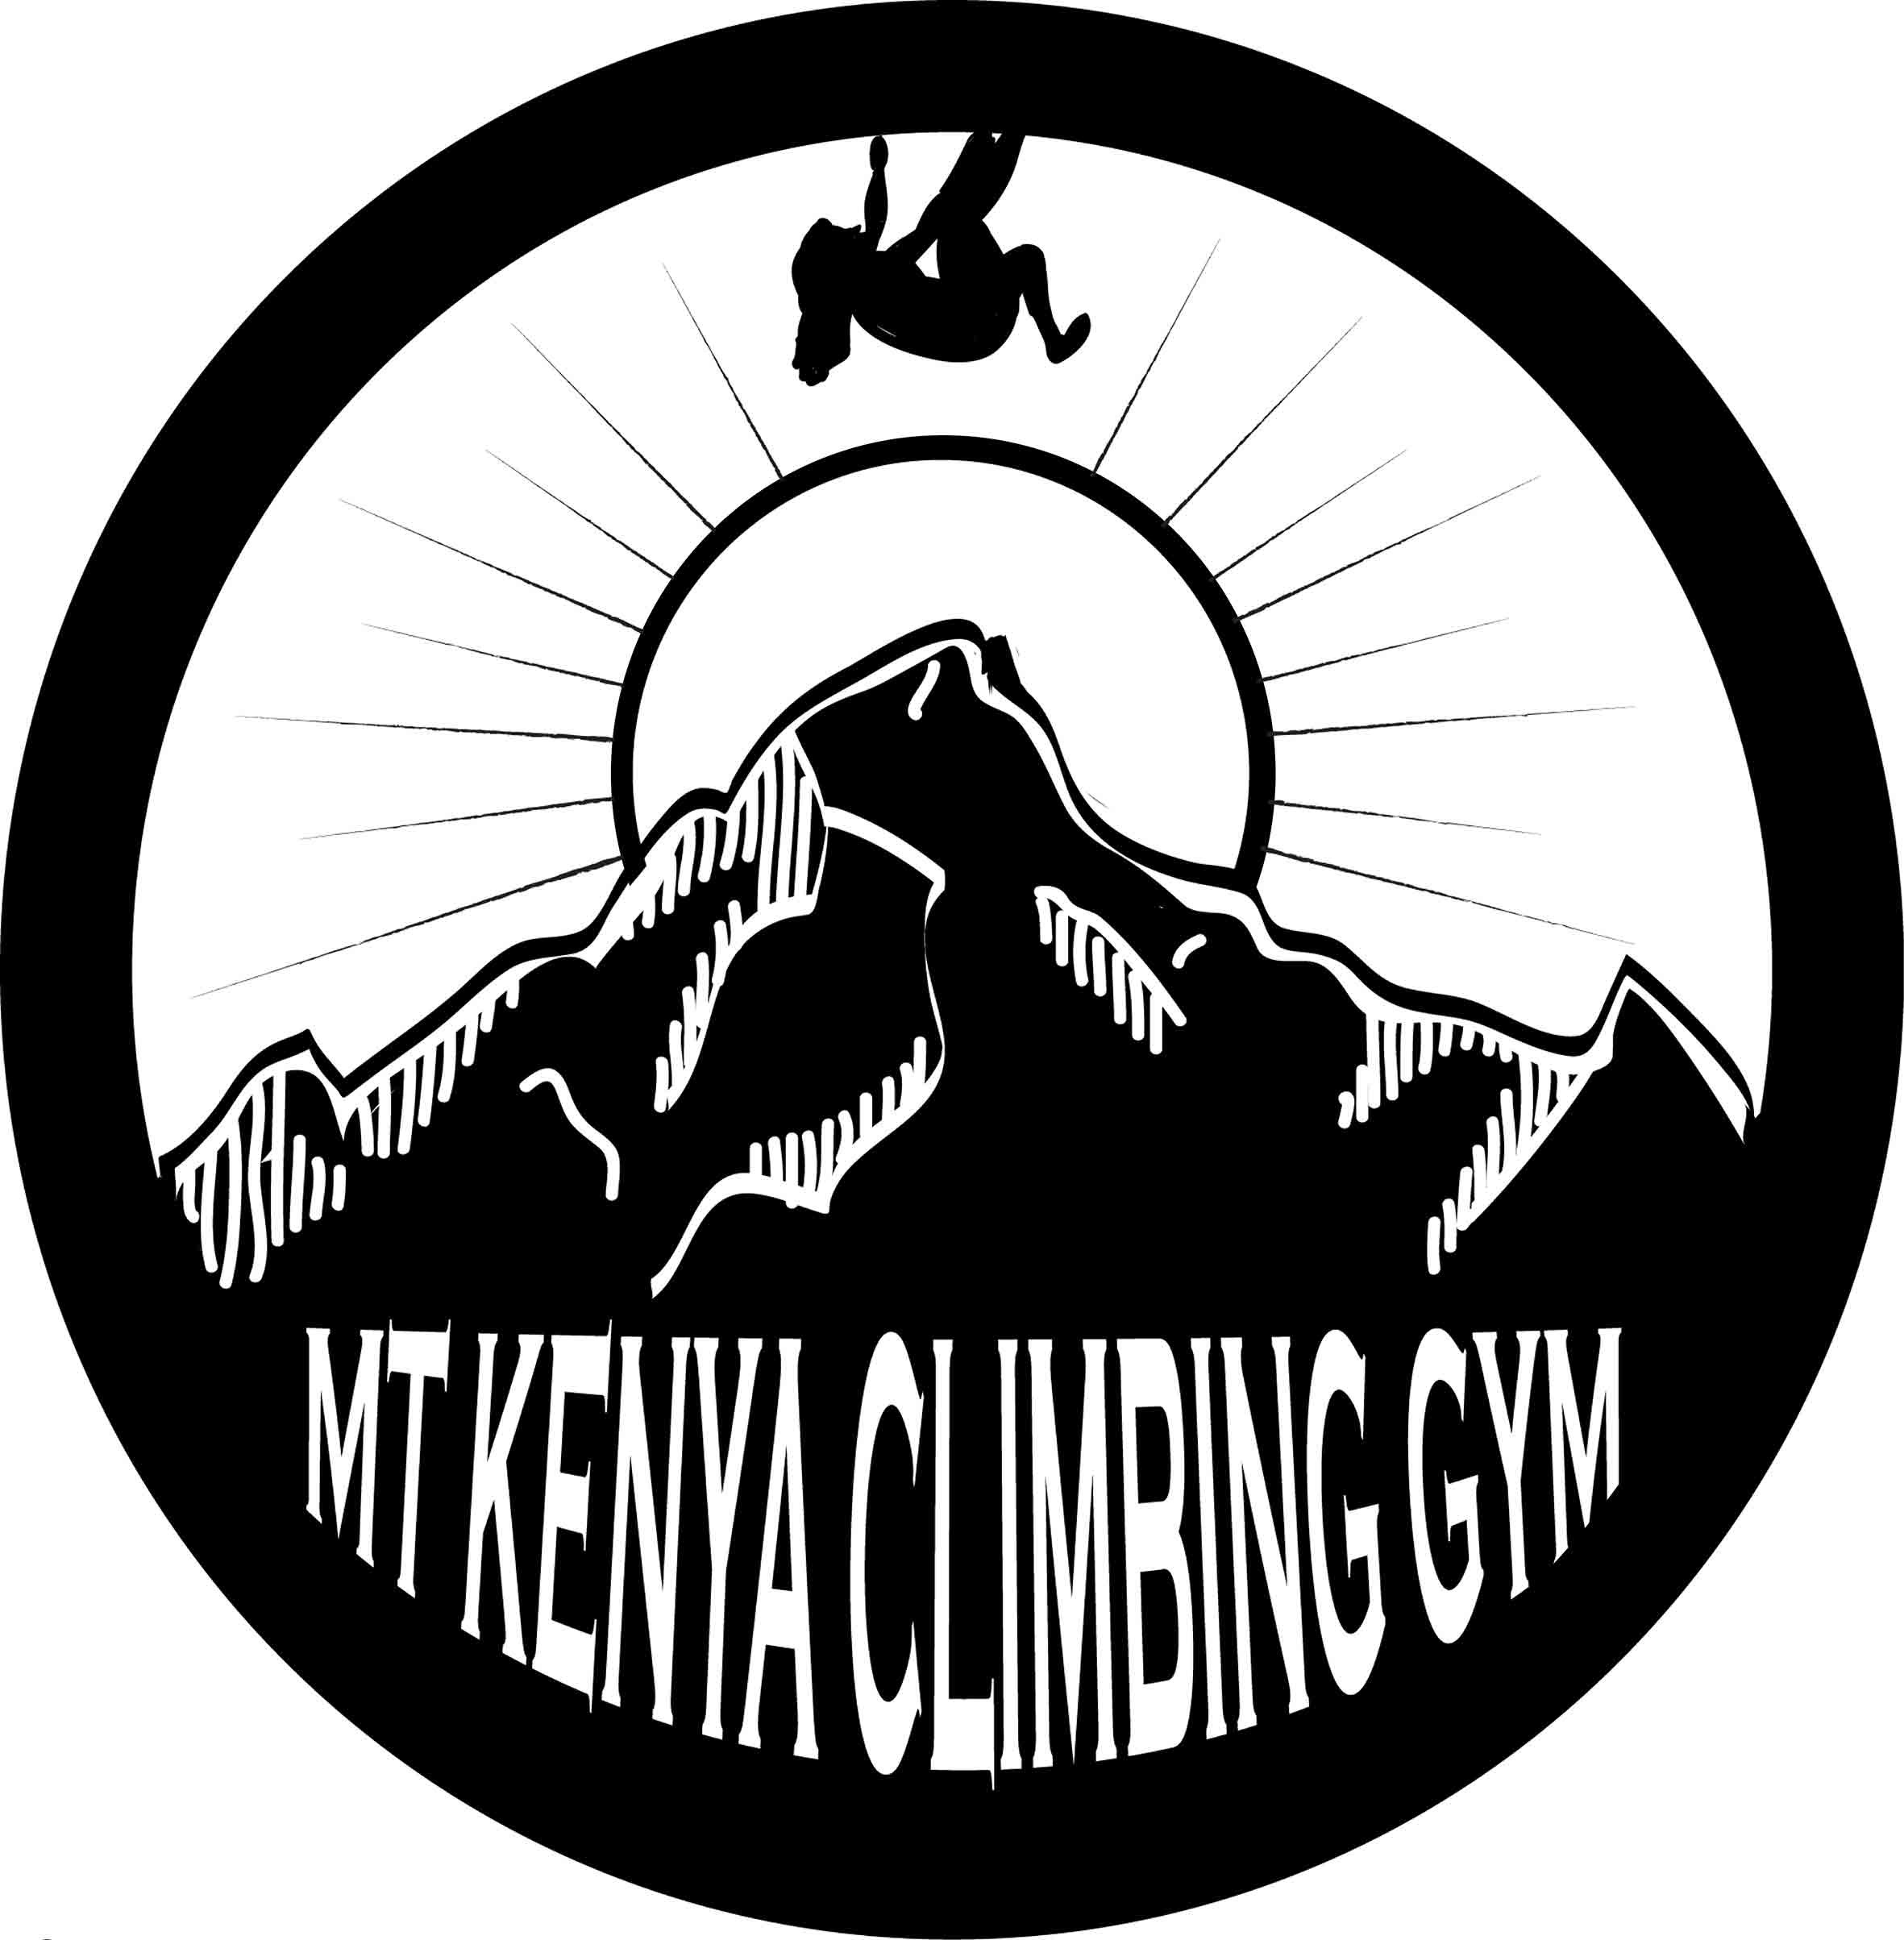 Mt Kenya Climbing Gym